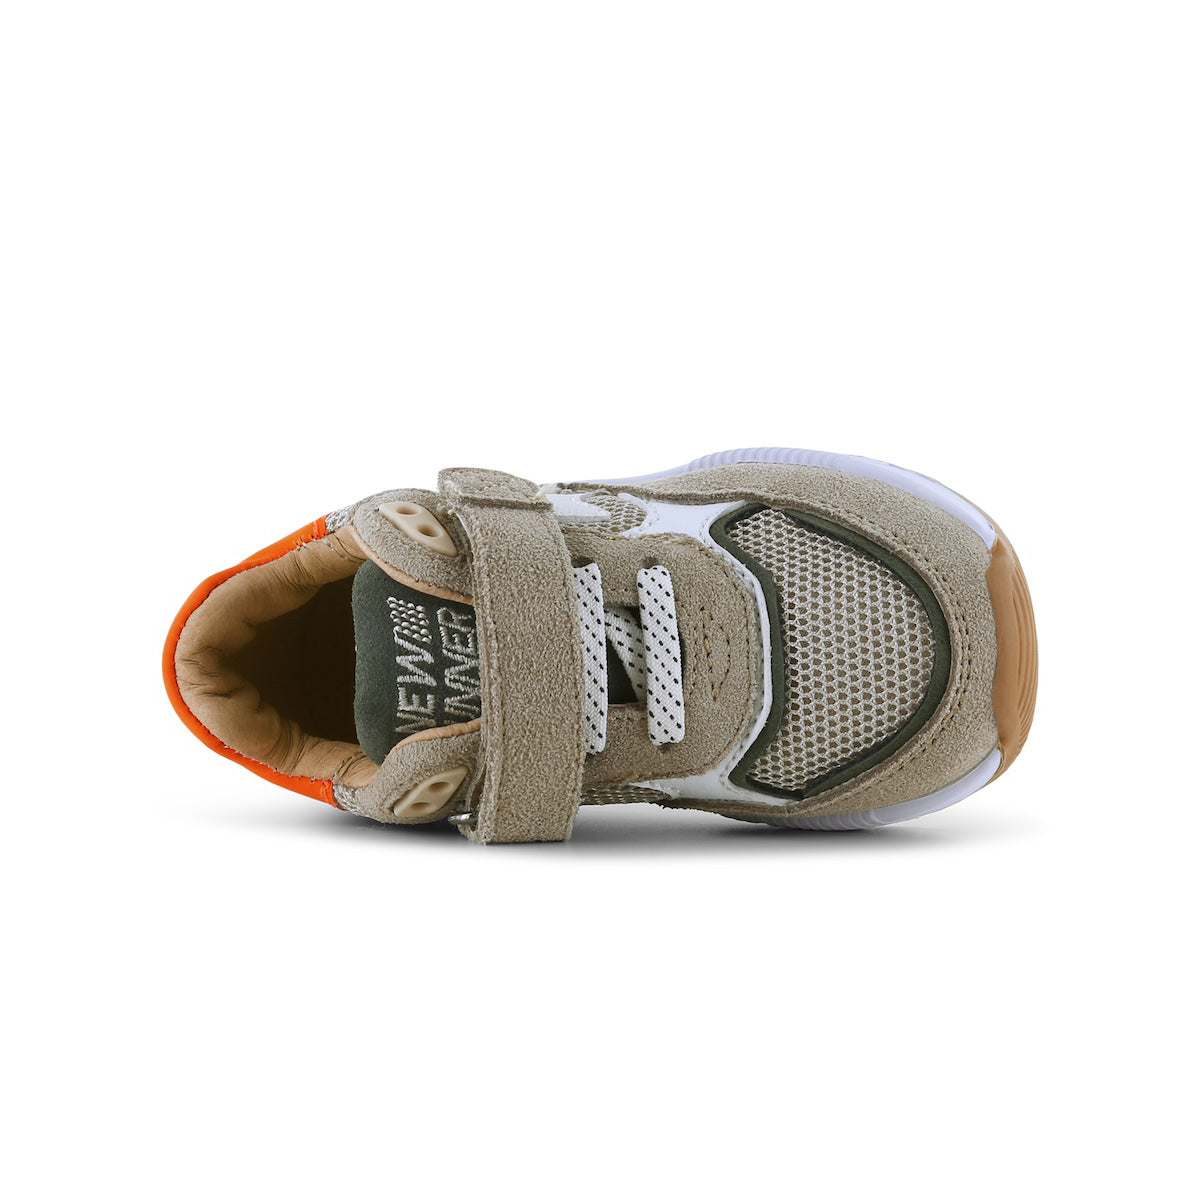 De Shoesme sneakers beige orange zijn super leuke schoenen voor jouw kindje. Shoesme heeft een hele uitgebreide sneaker collectie. Alle sneakers zien er tof uit want er is veel aandacht besteed aan de details. VanZus.